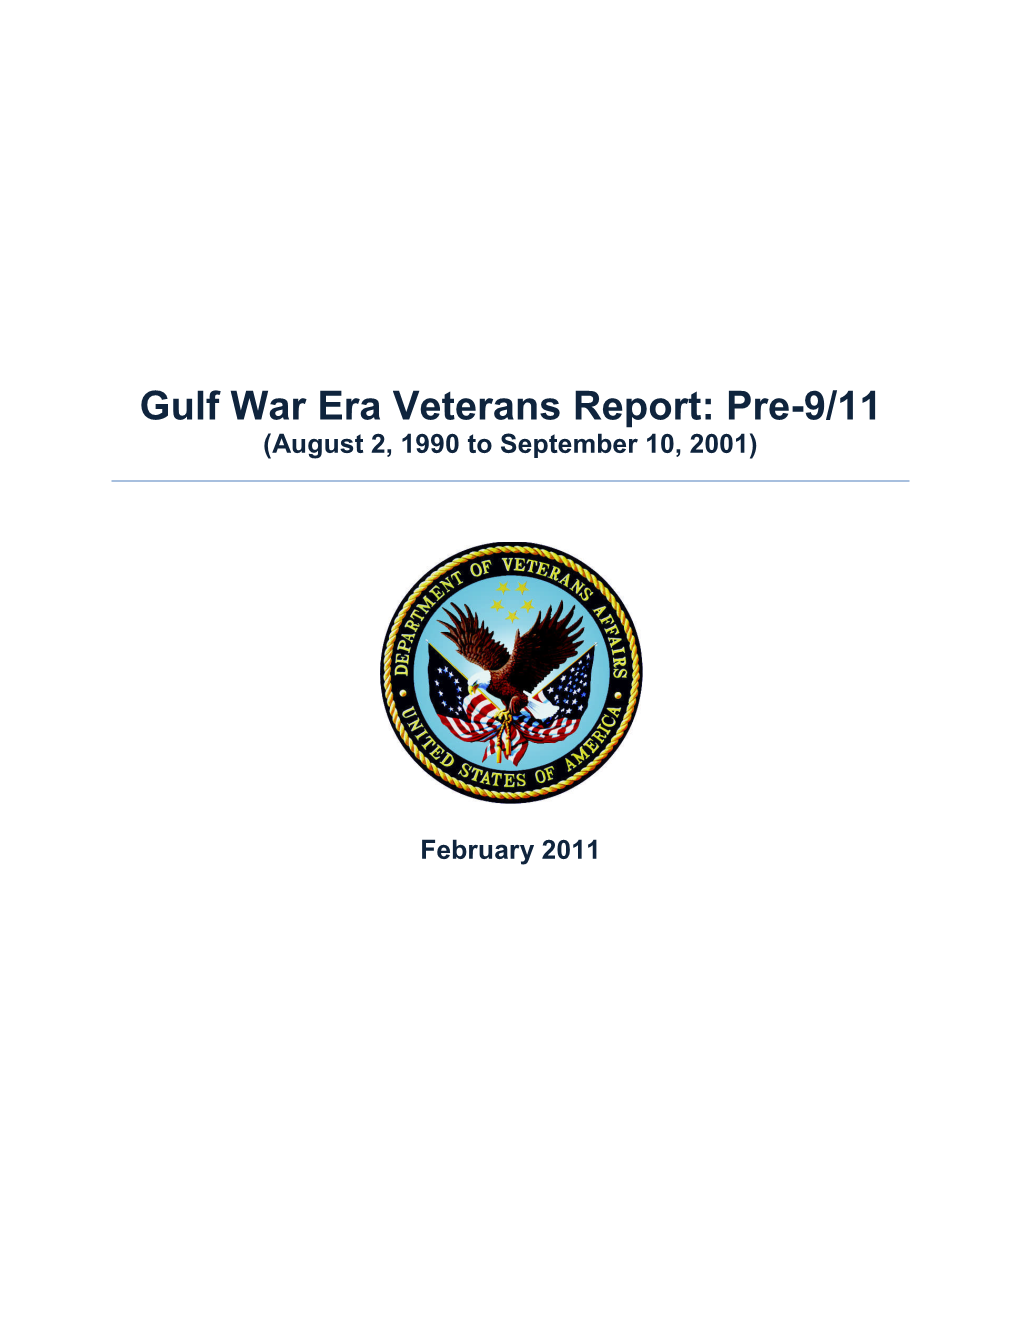 Gulf War Era Veterans Report: Pre-9/11 (August 2, 1990 to September 10, 2001)